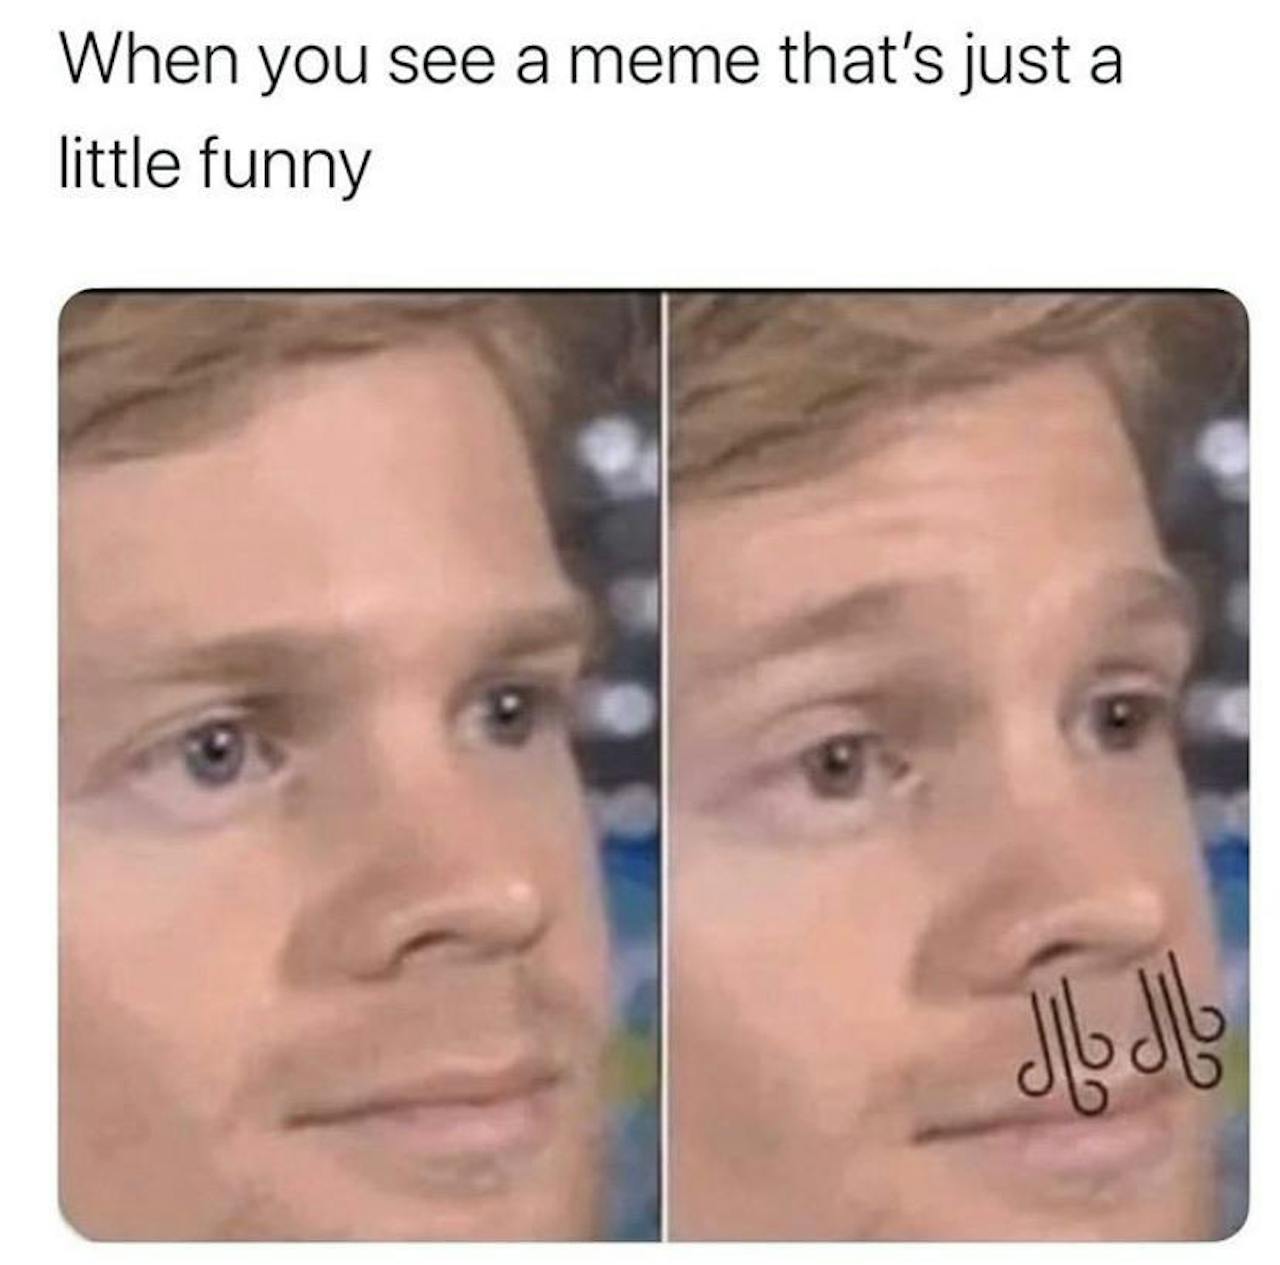 Meme over het bekijken van een meme.